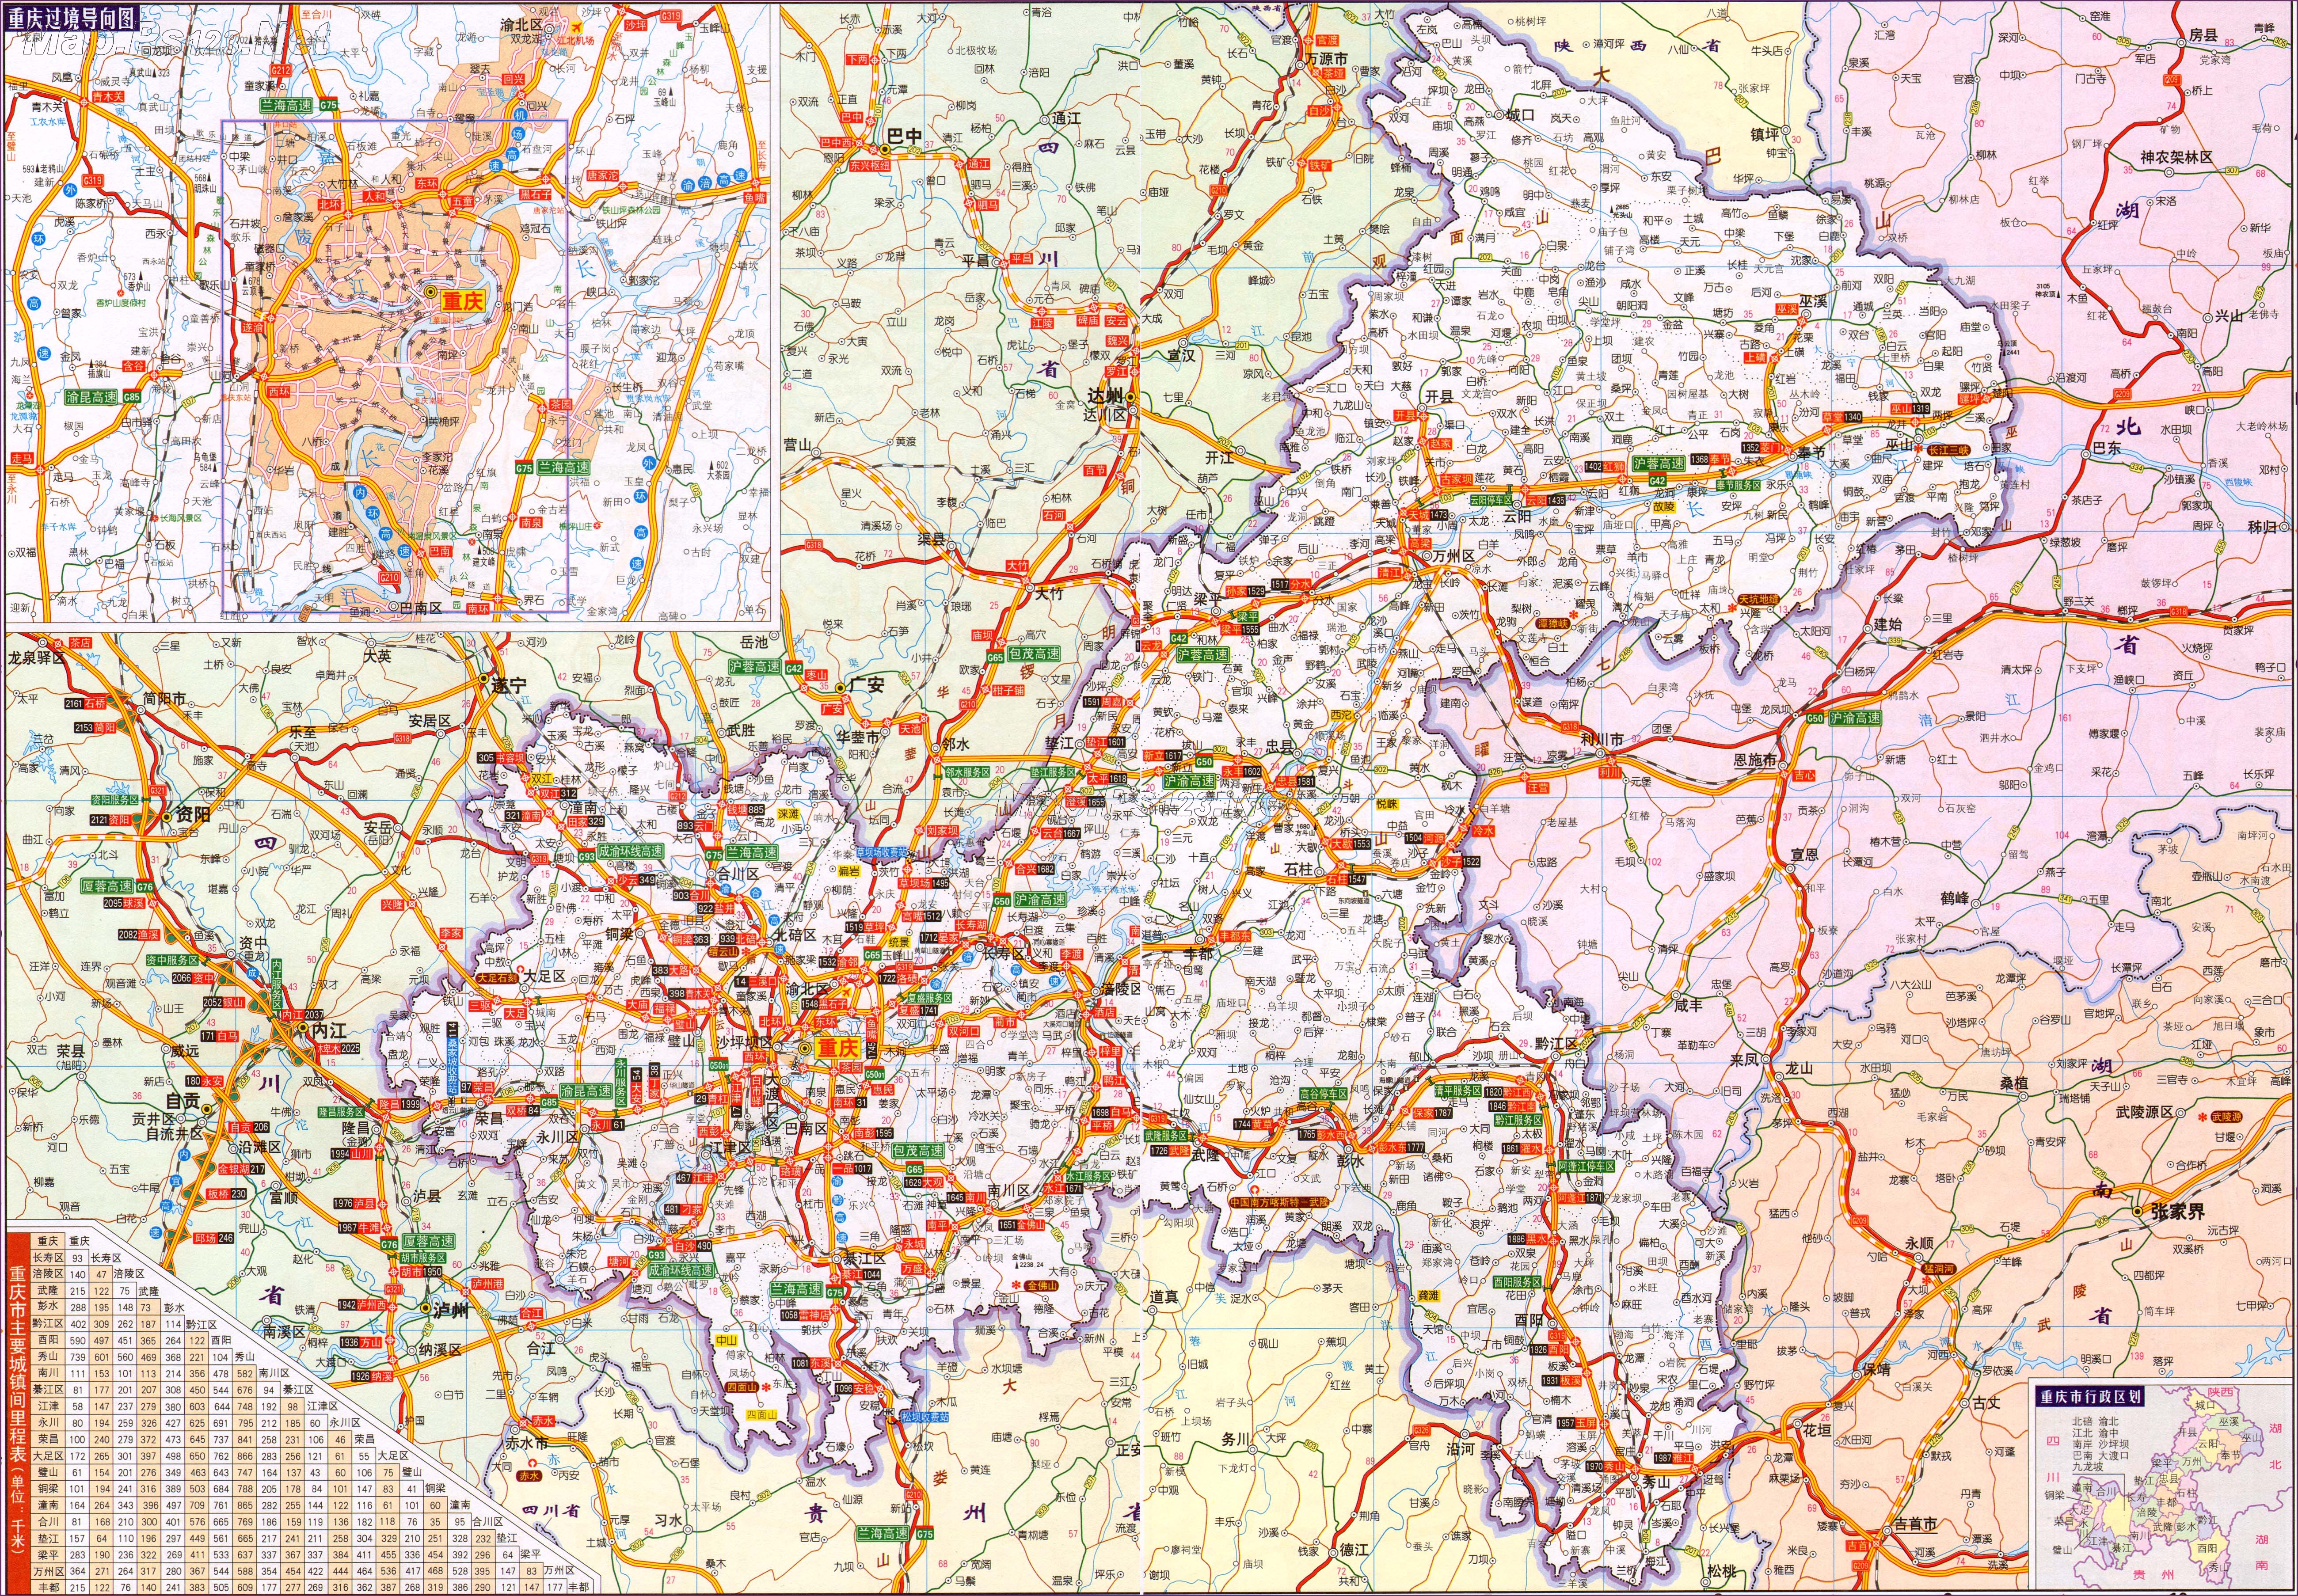 中国地图 重庆 >> 重庆交通地图最新版  分类: 重庆  更新:2014-4-11图片